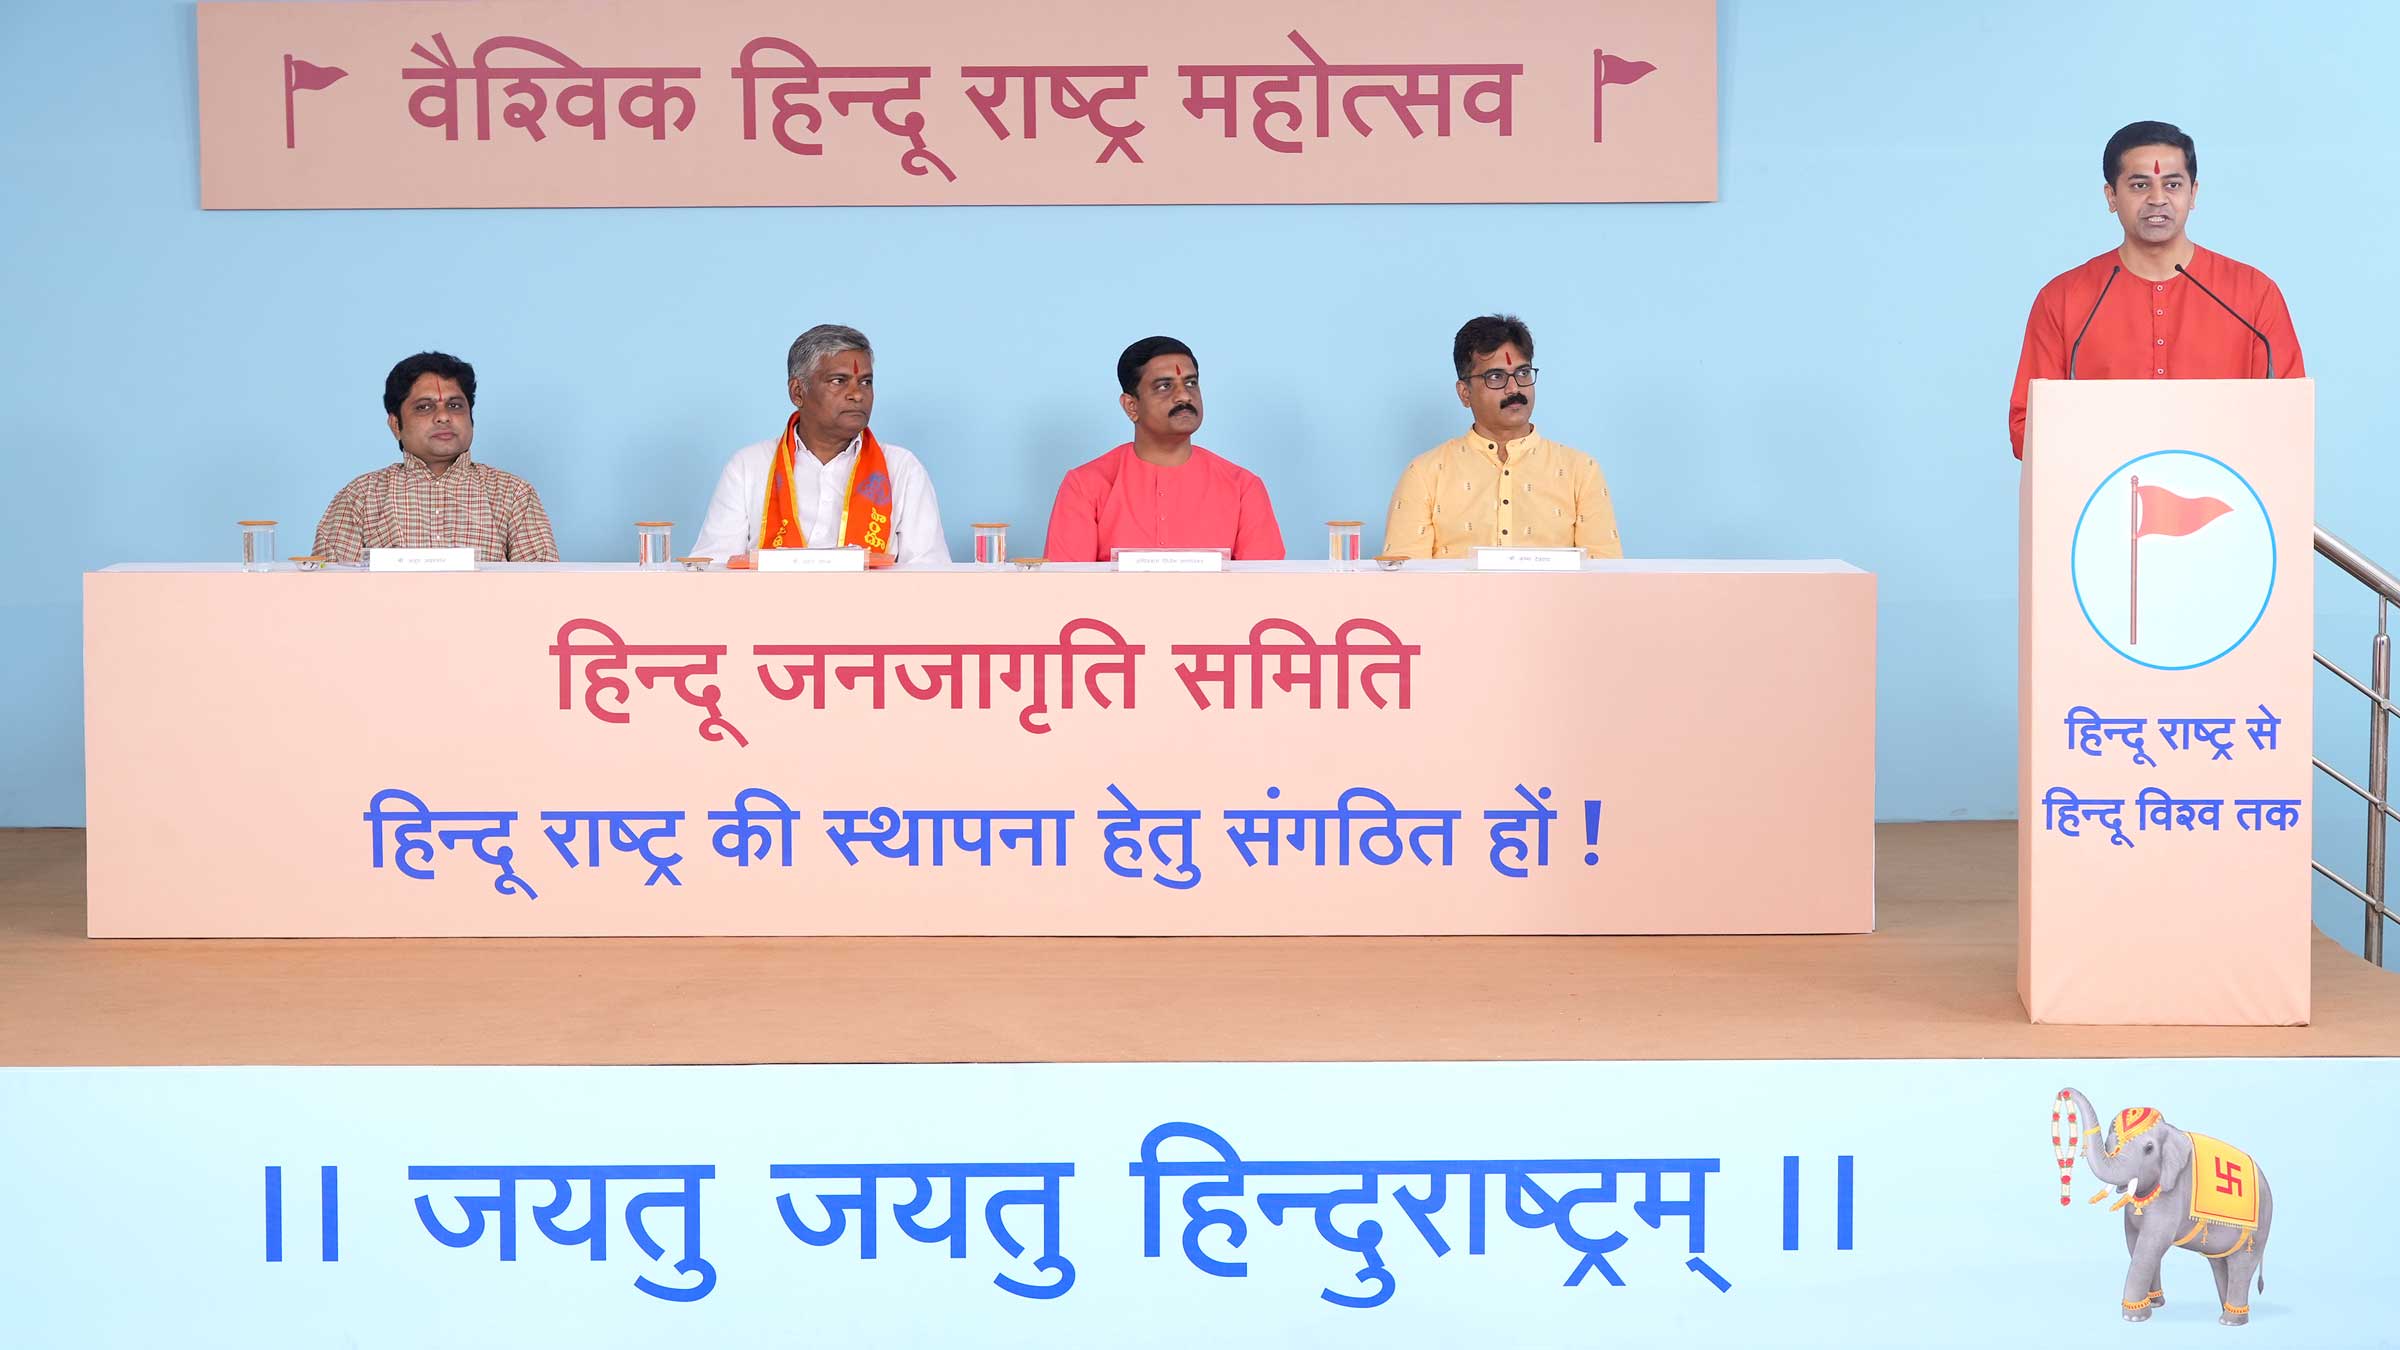 From Left - Shri Anup Jayswal, Shri Mahesh Degala, Advocate Nilesh Sangolkar and Shri Krishna Devaraya